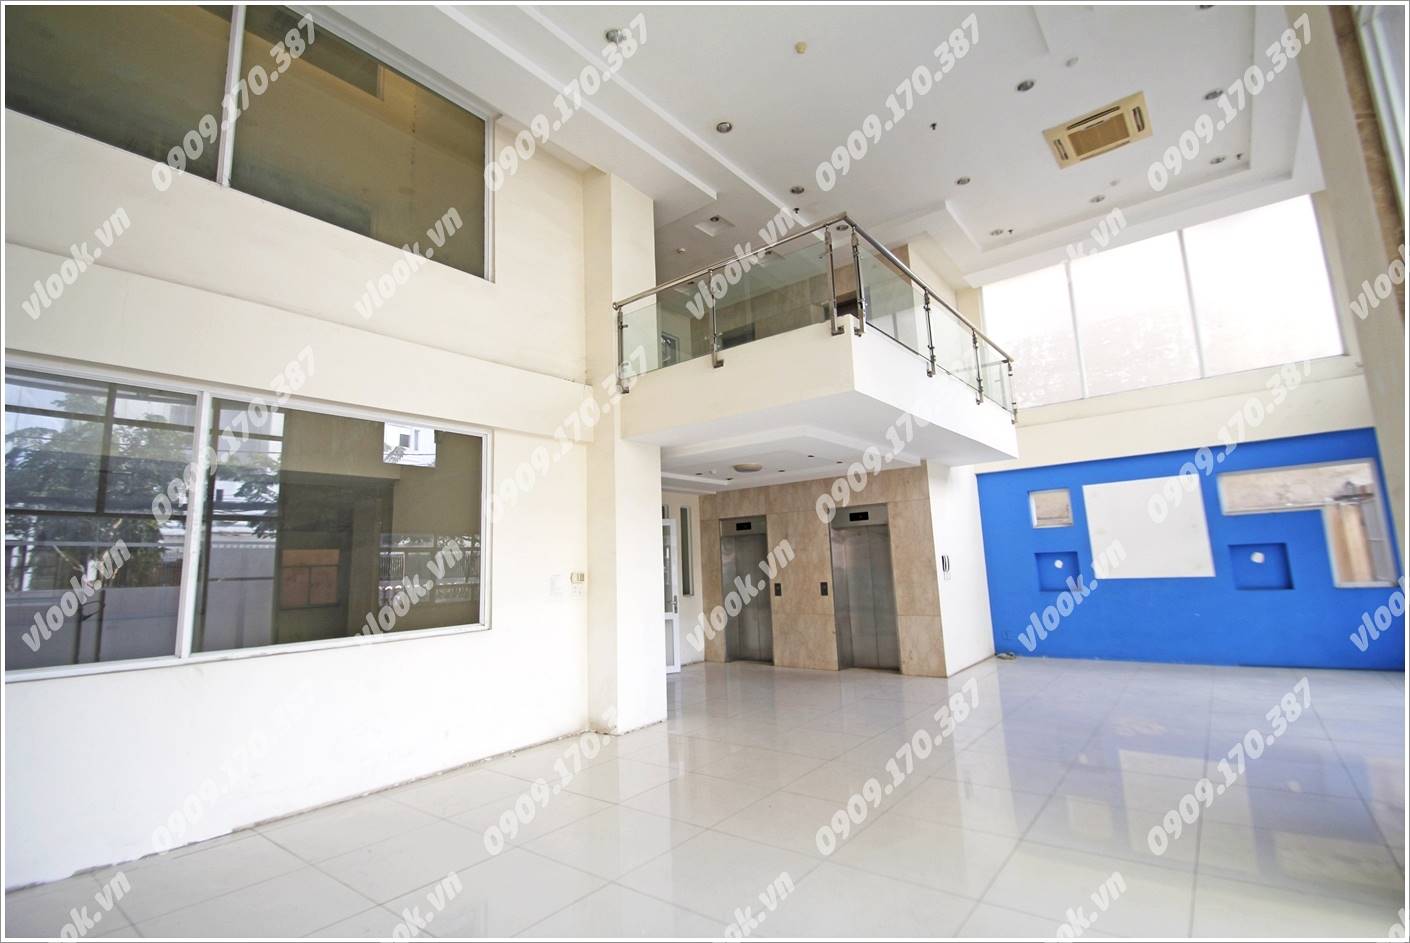 Cao ốc cho thuê văn phòng Halo Lê Trung Nghĩa Building, Quận Tân Bình - vlook.vn